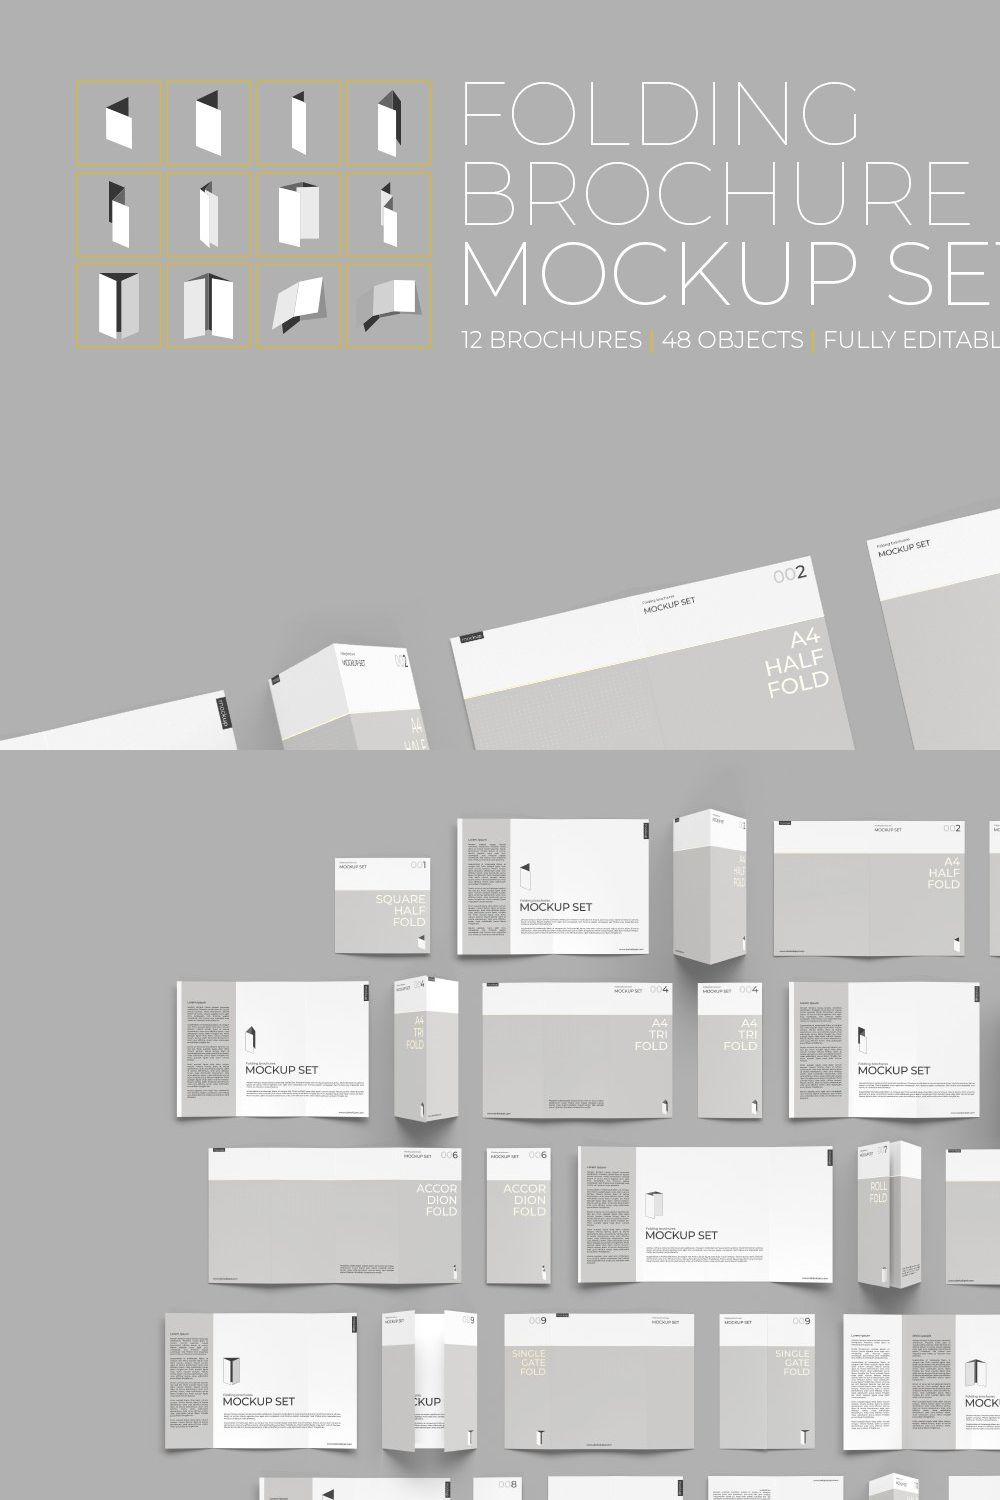 Folding Brochure Mockup Set pinterest preview image.